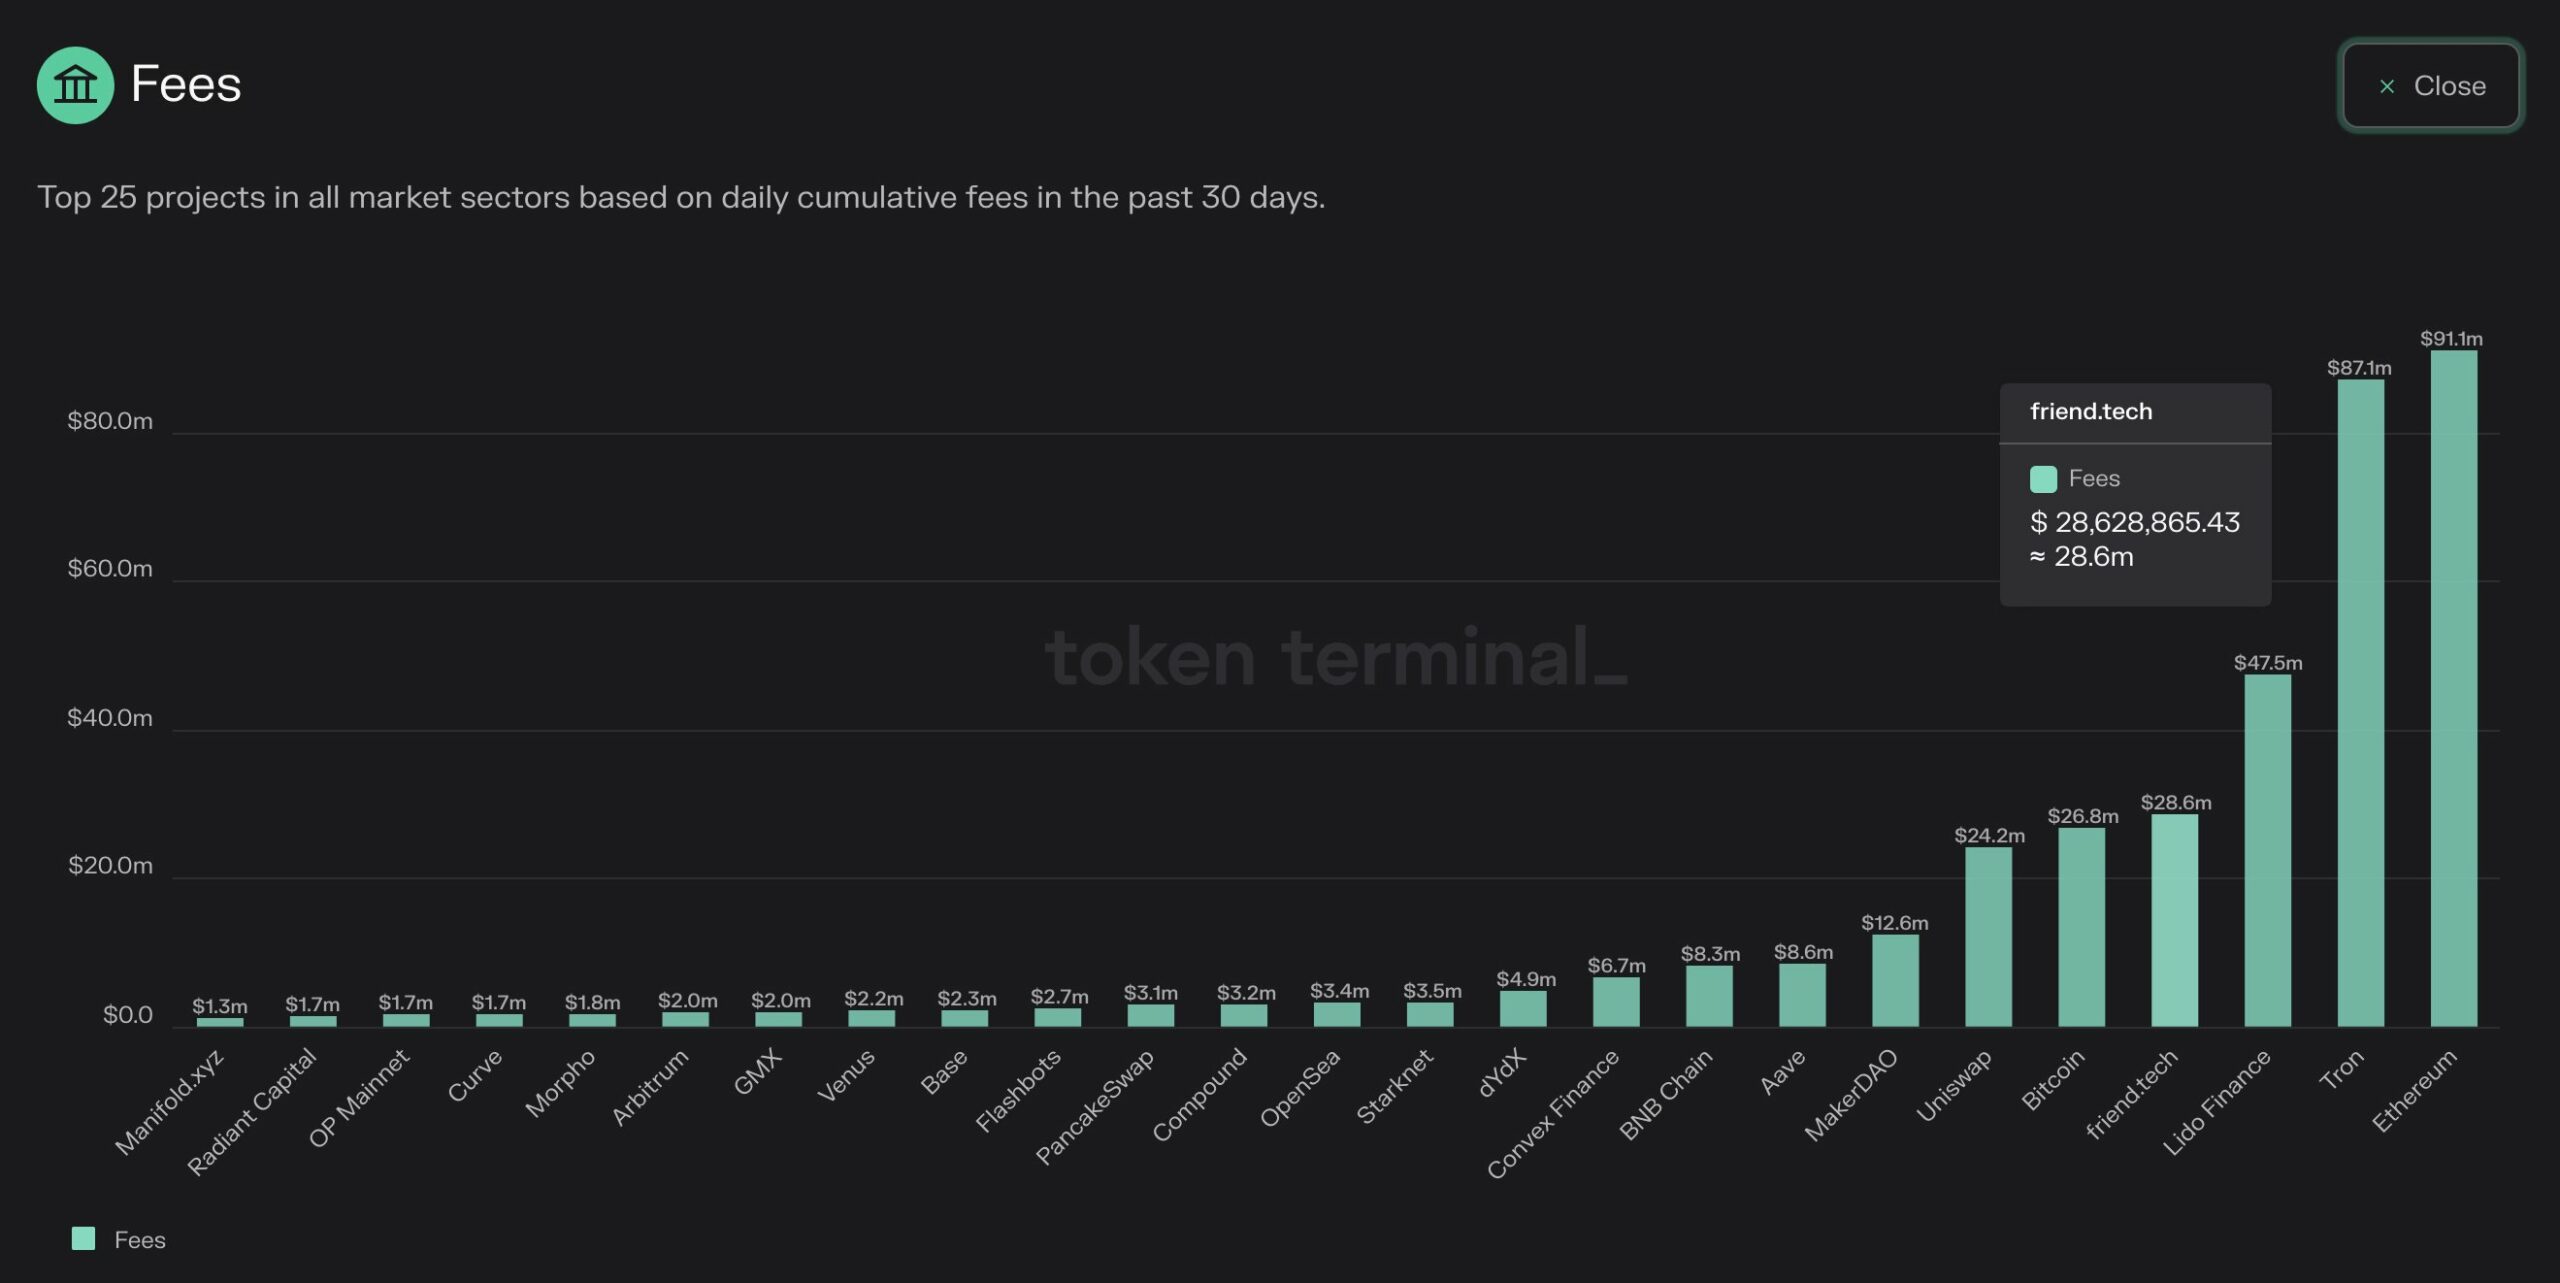 Friend.tech fees surpass Bitcoin| Source: TokenTerminal